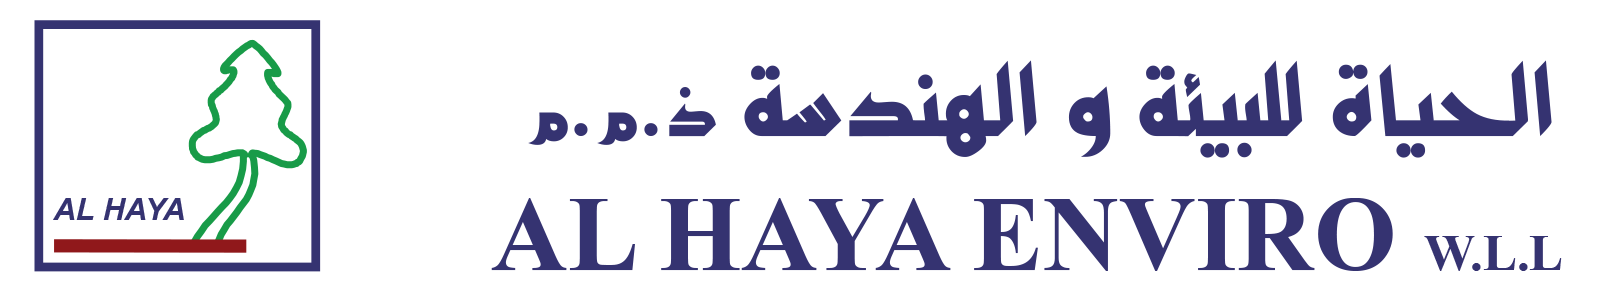 AL HAYAQATAR